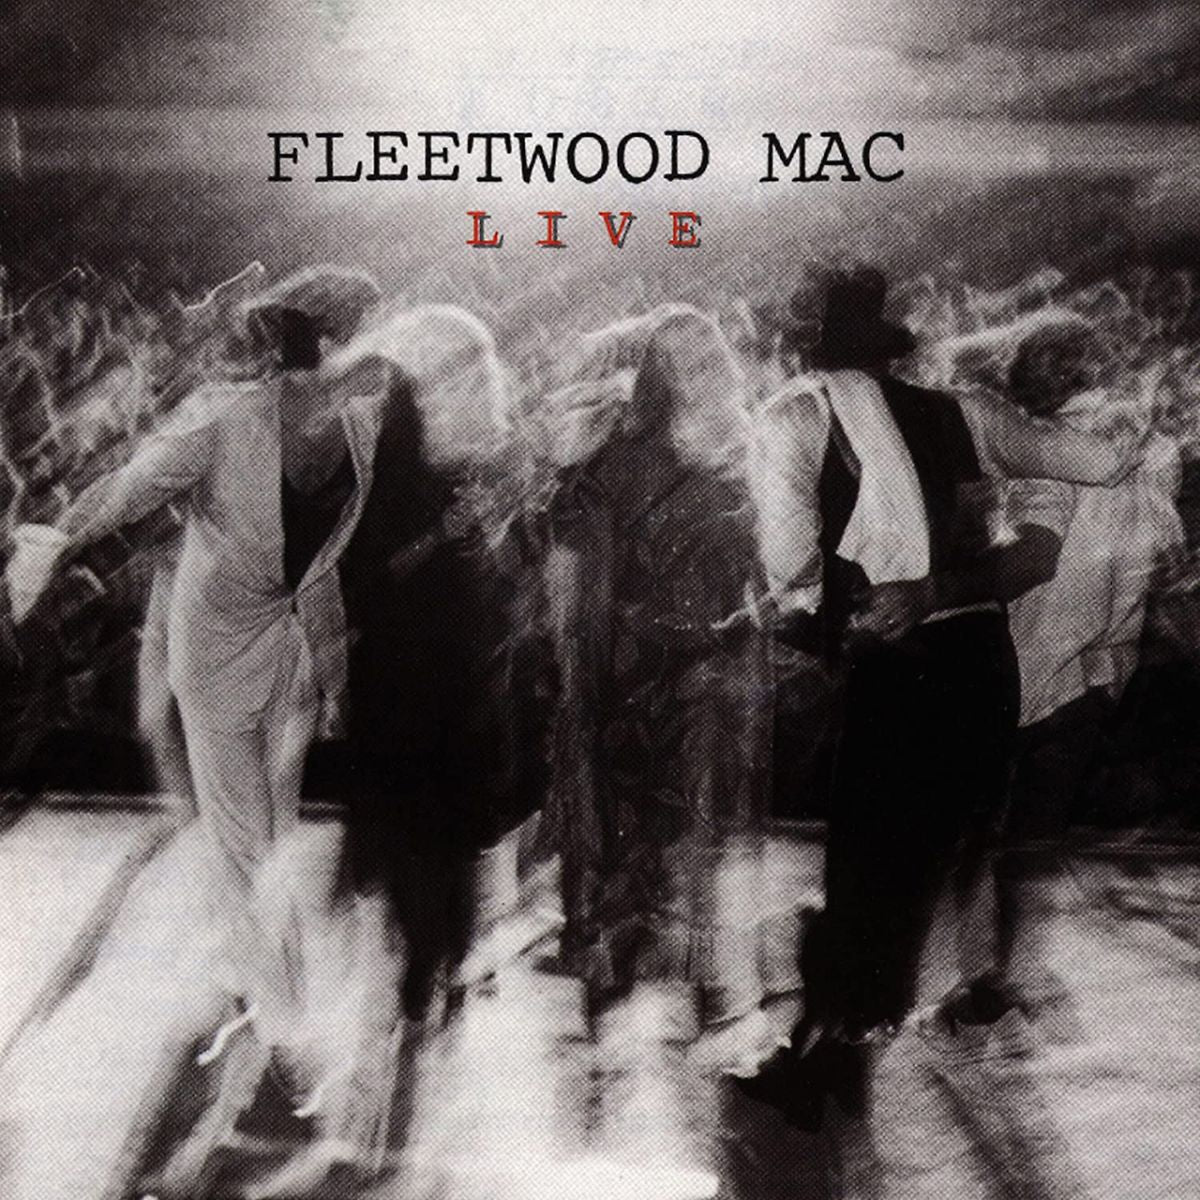 FLEETWOOD MAC - Fleetwood Mac Live (Remastered) - 2LP - 180g Vinyl